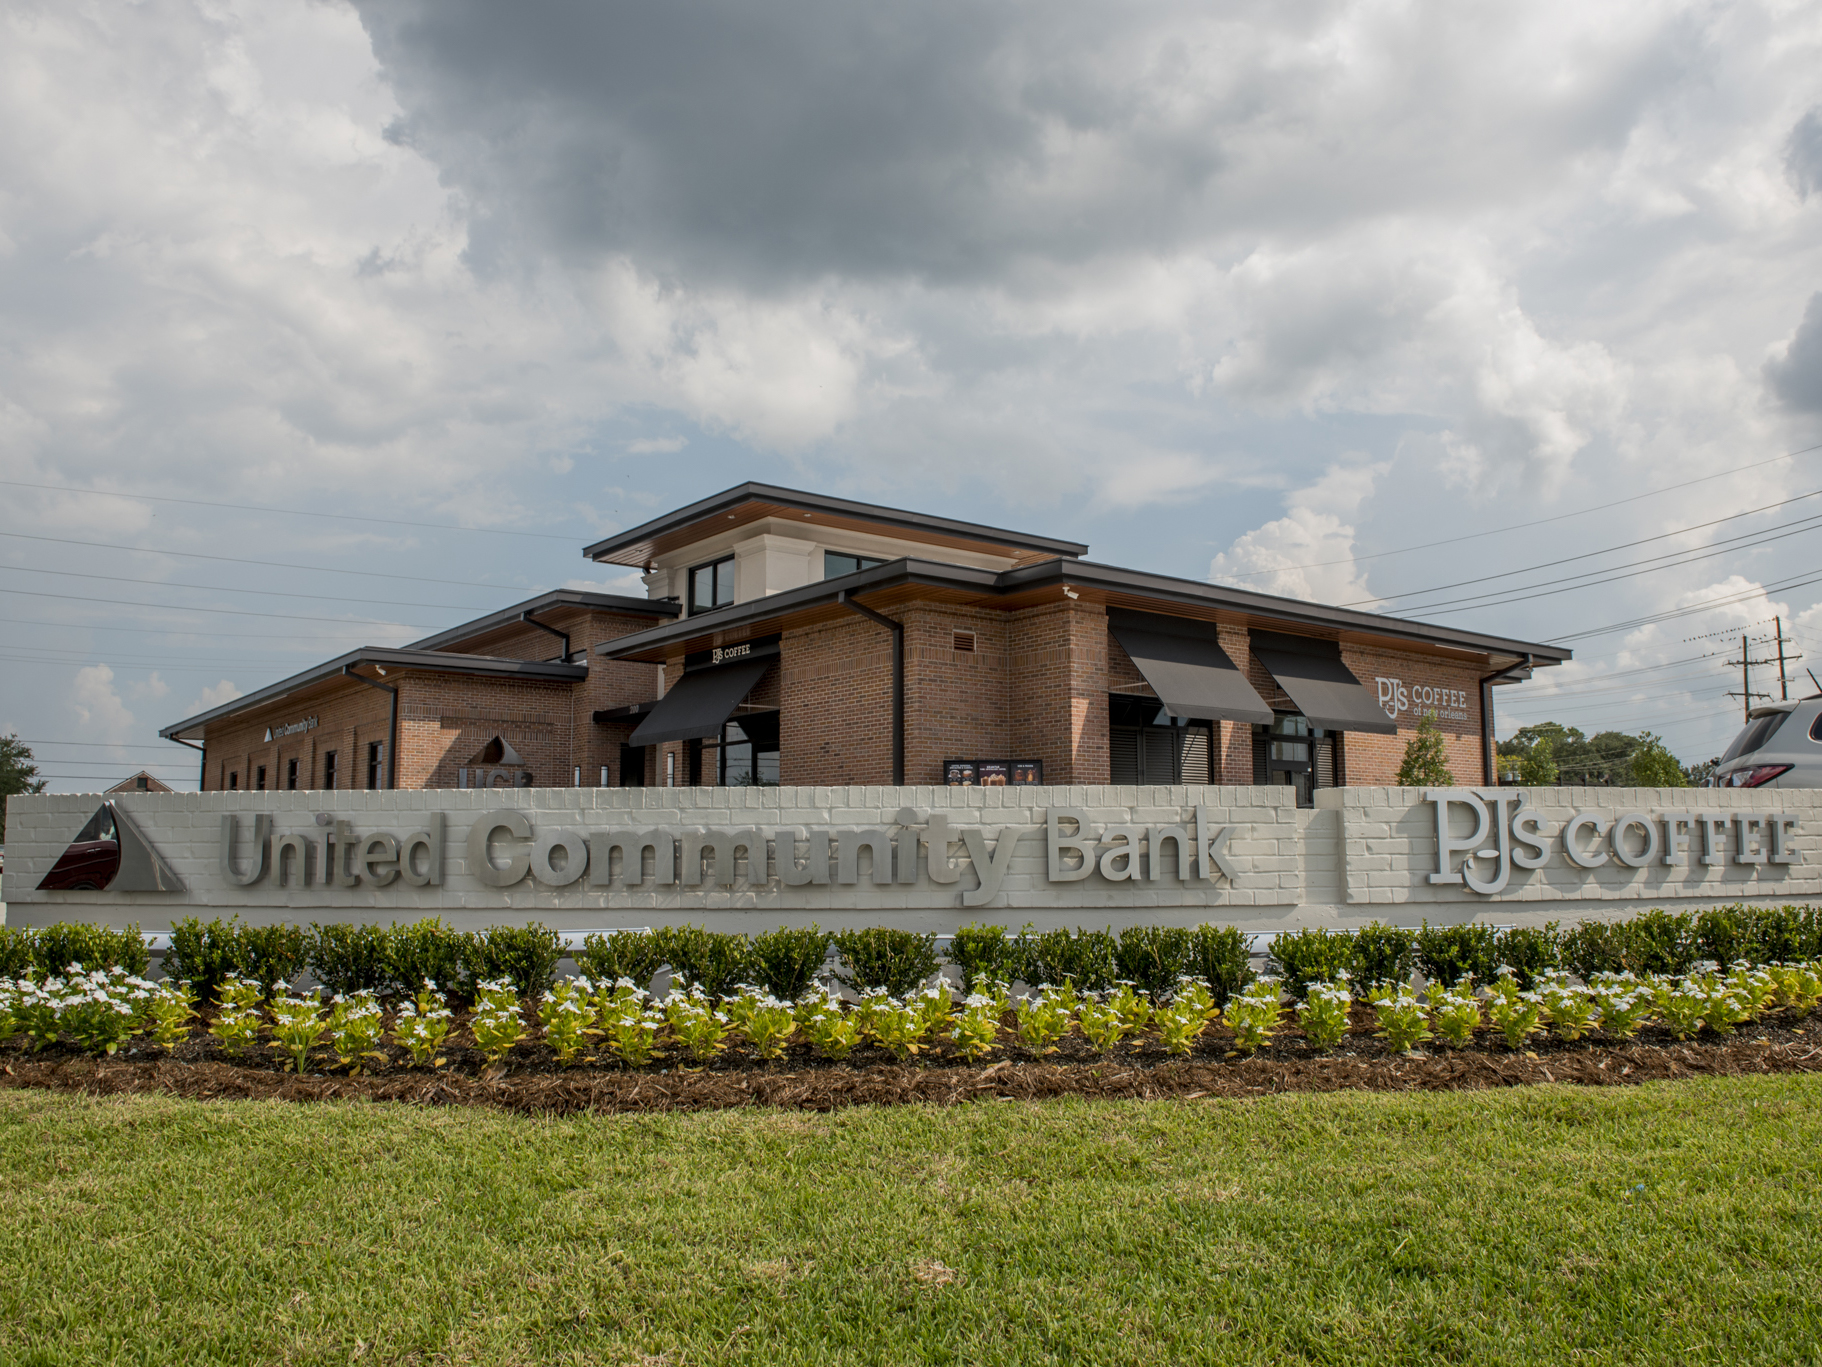 United Community Bank – Wayfinding